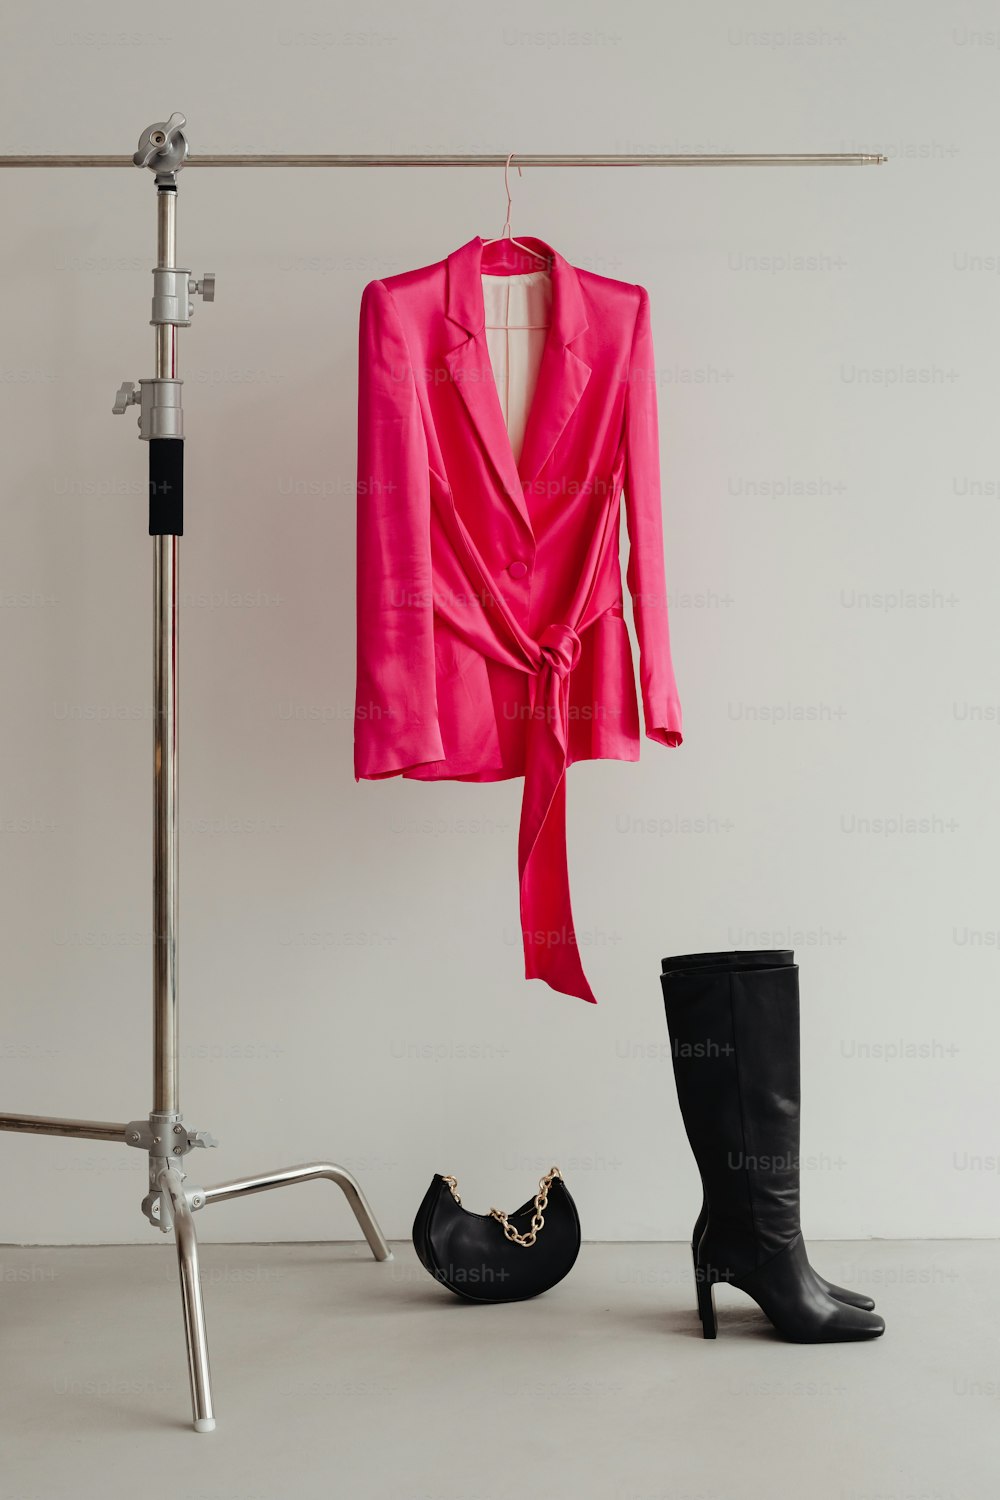 une paire de bottes noires et une veste rose accrochées à un porte-vêtements